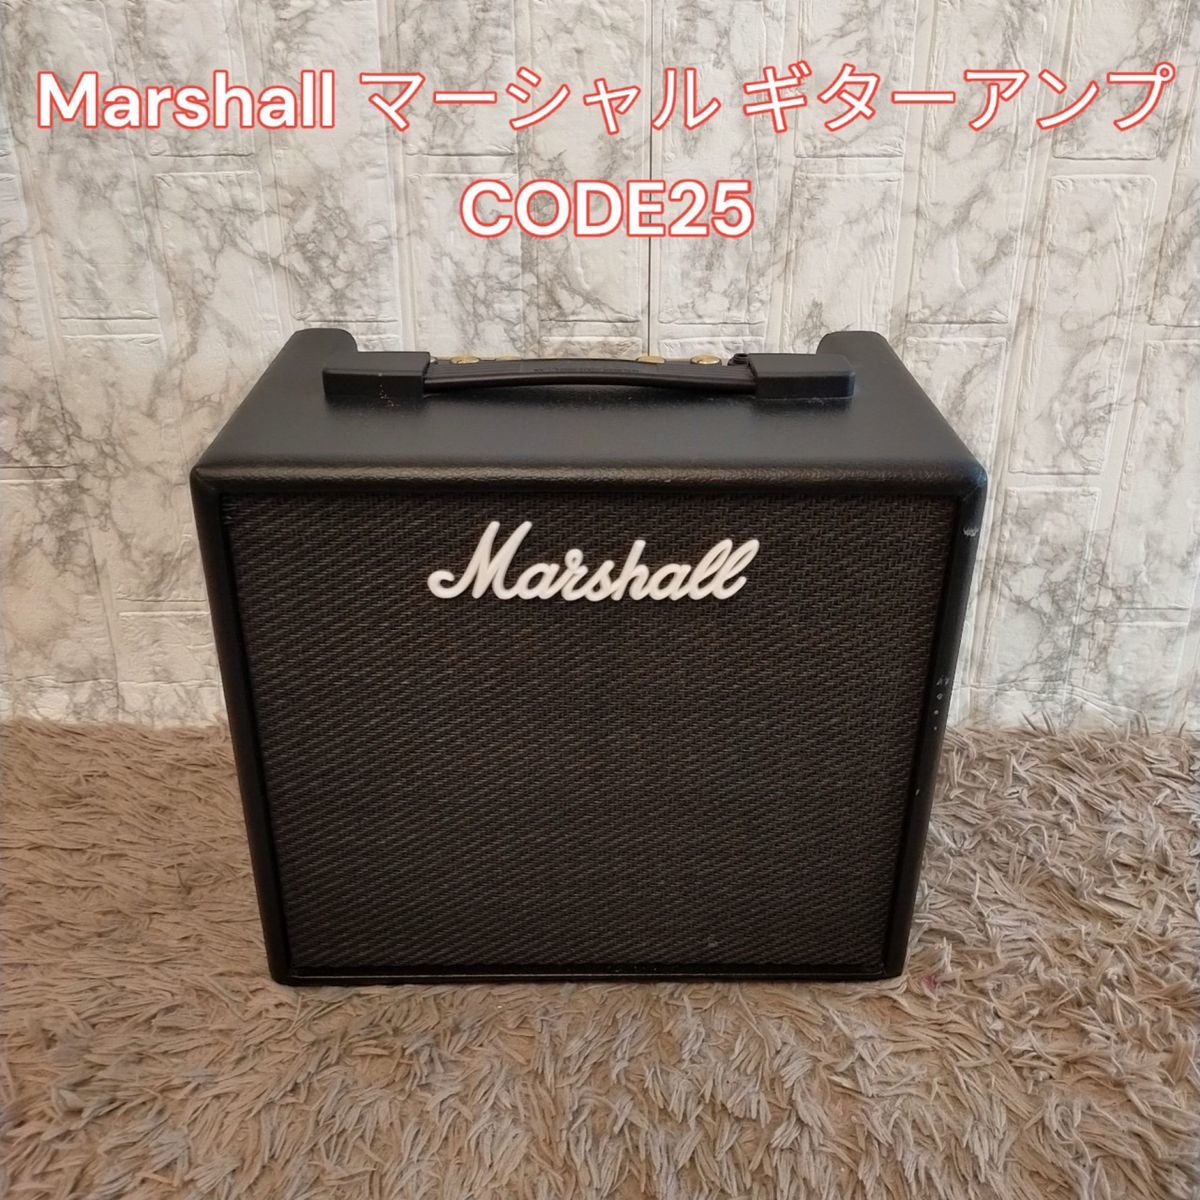 国産品 Marshall マーシャル ギターアンプ CODE25 ( 楽器、器材 www